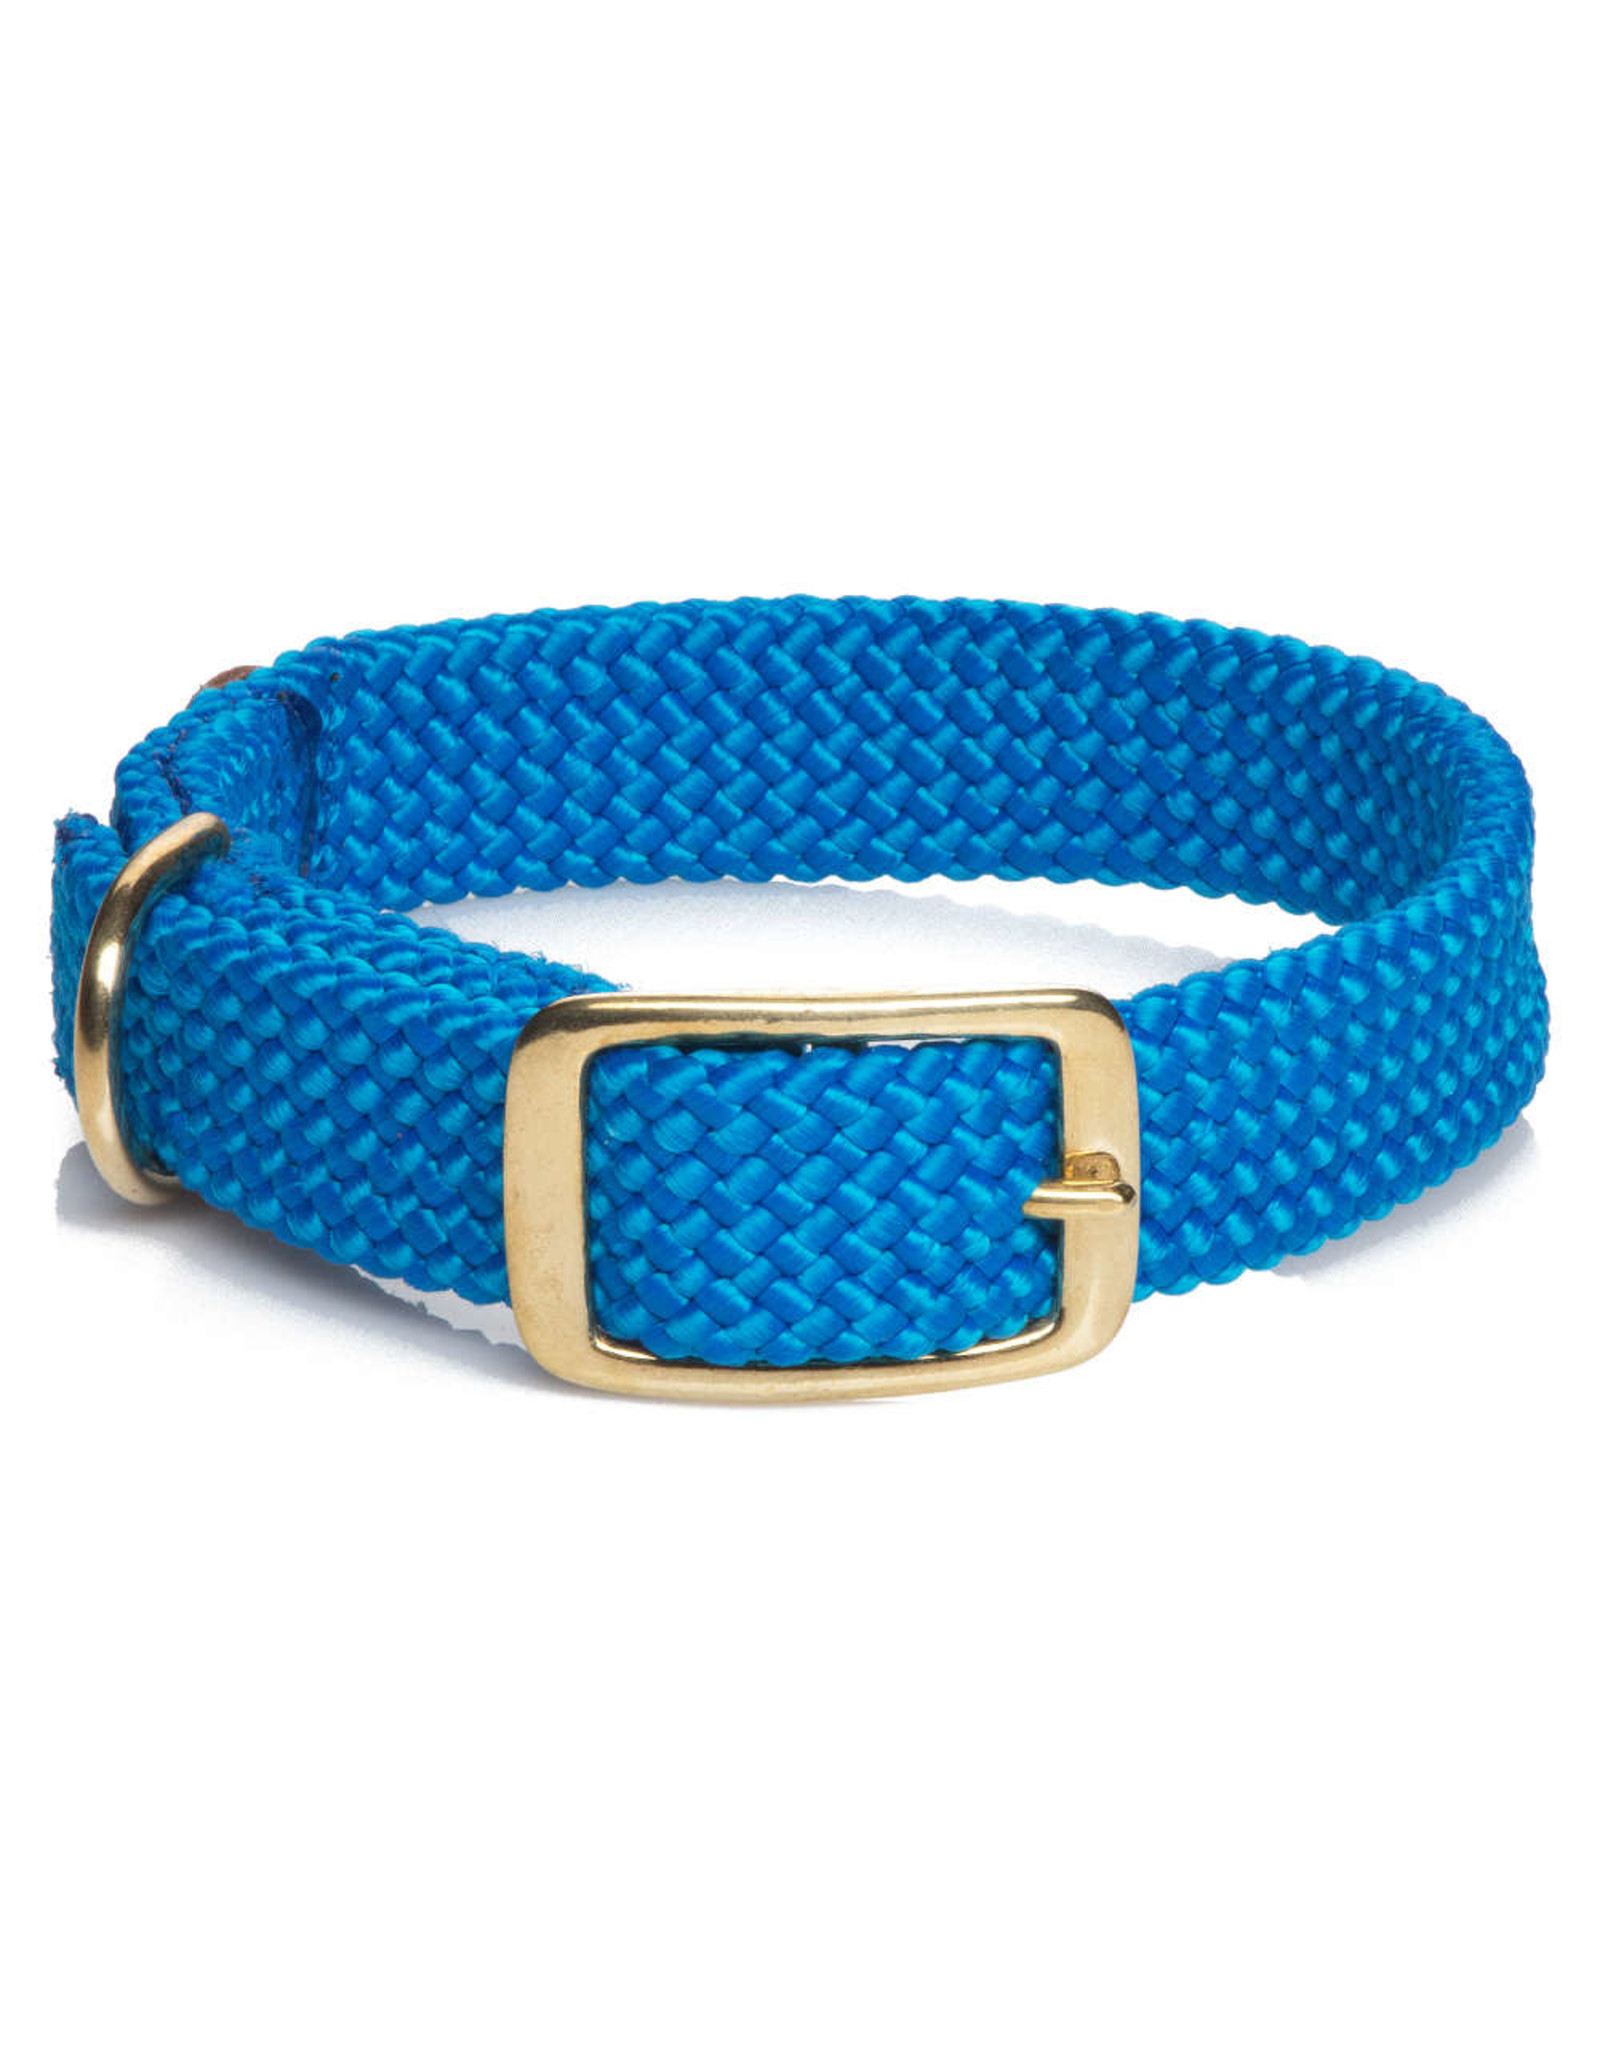 Mendota Mendota Double-Braid Collar BLUE 1"x24"